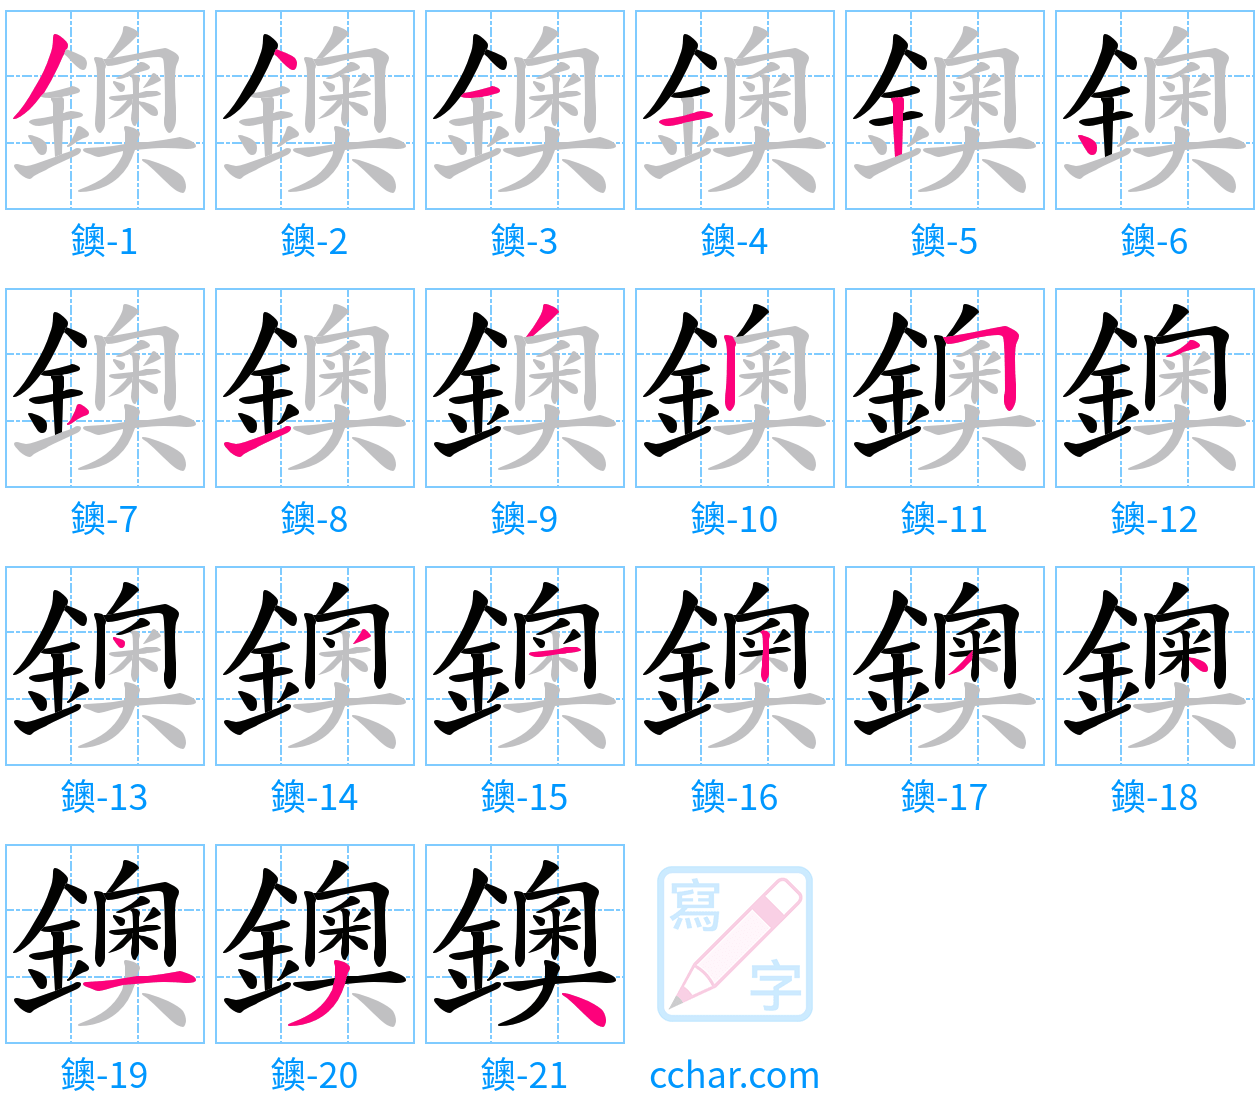 鐭 stroke order step-by-step diagram